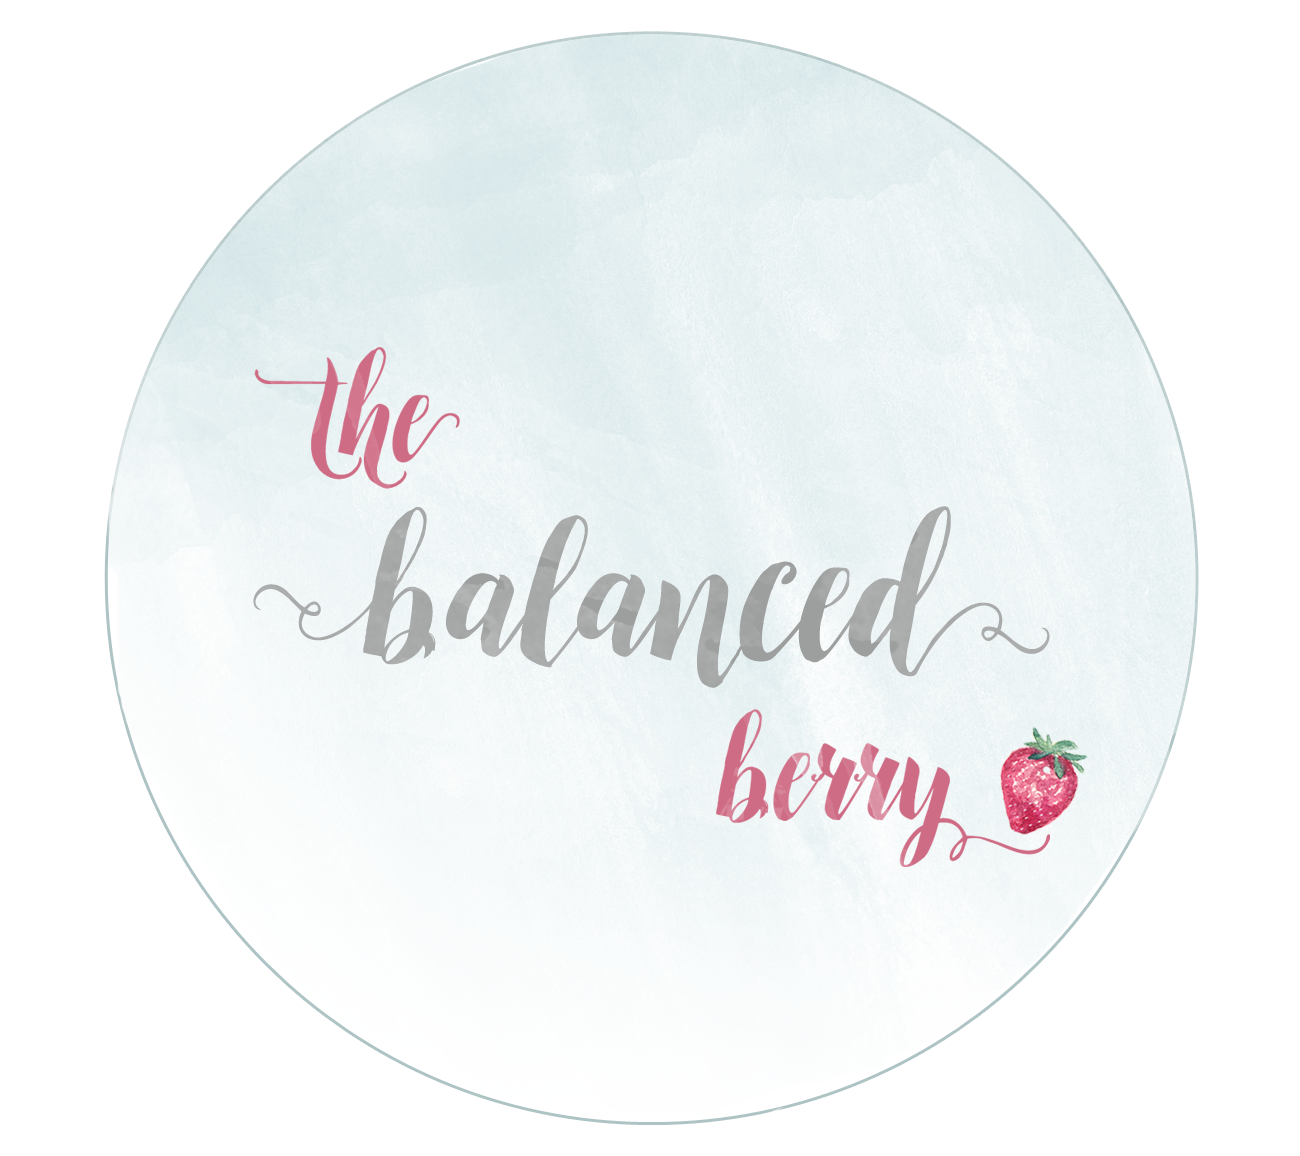 The Balanced Berry got a makeover! #branding #logo #design